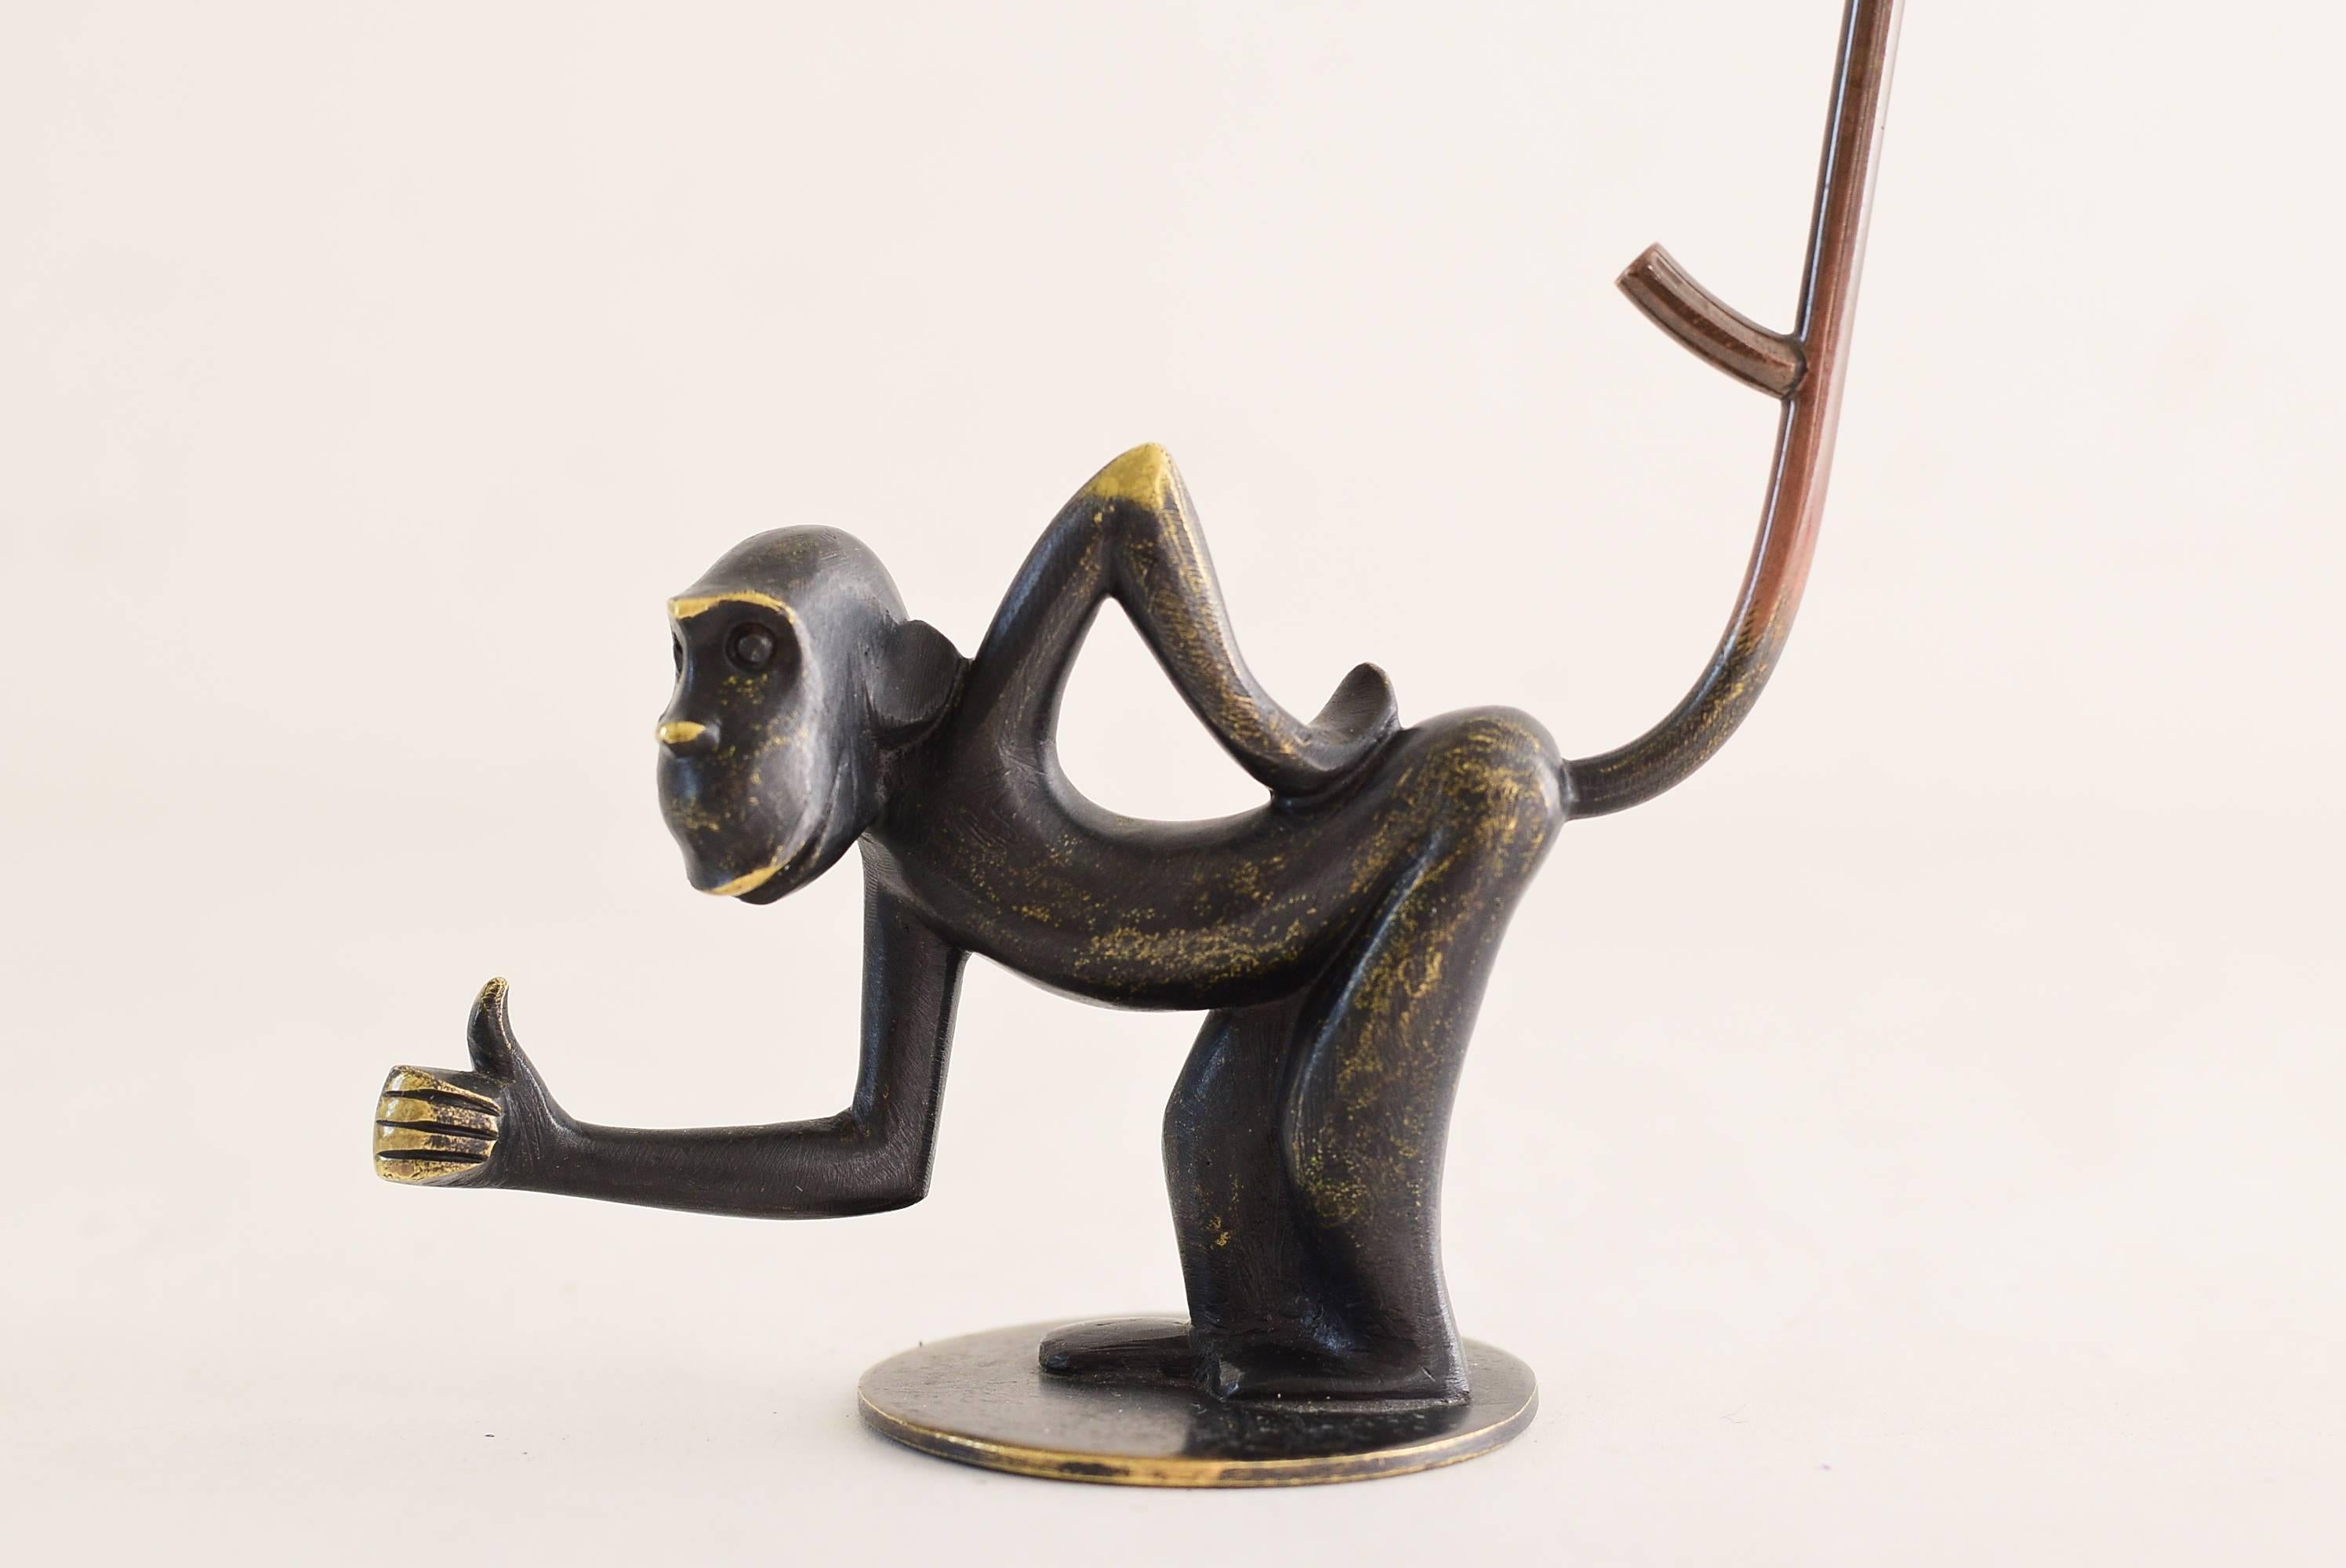 Brass monkey figurine pretzel holder, ring holder by Richard Rohac.
Original condition.